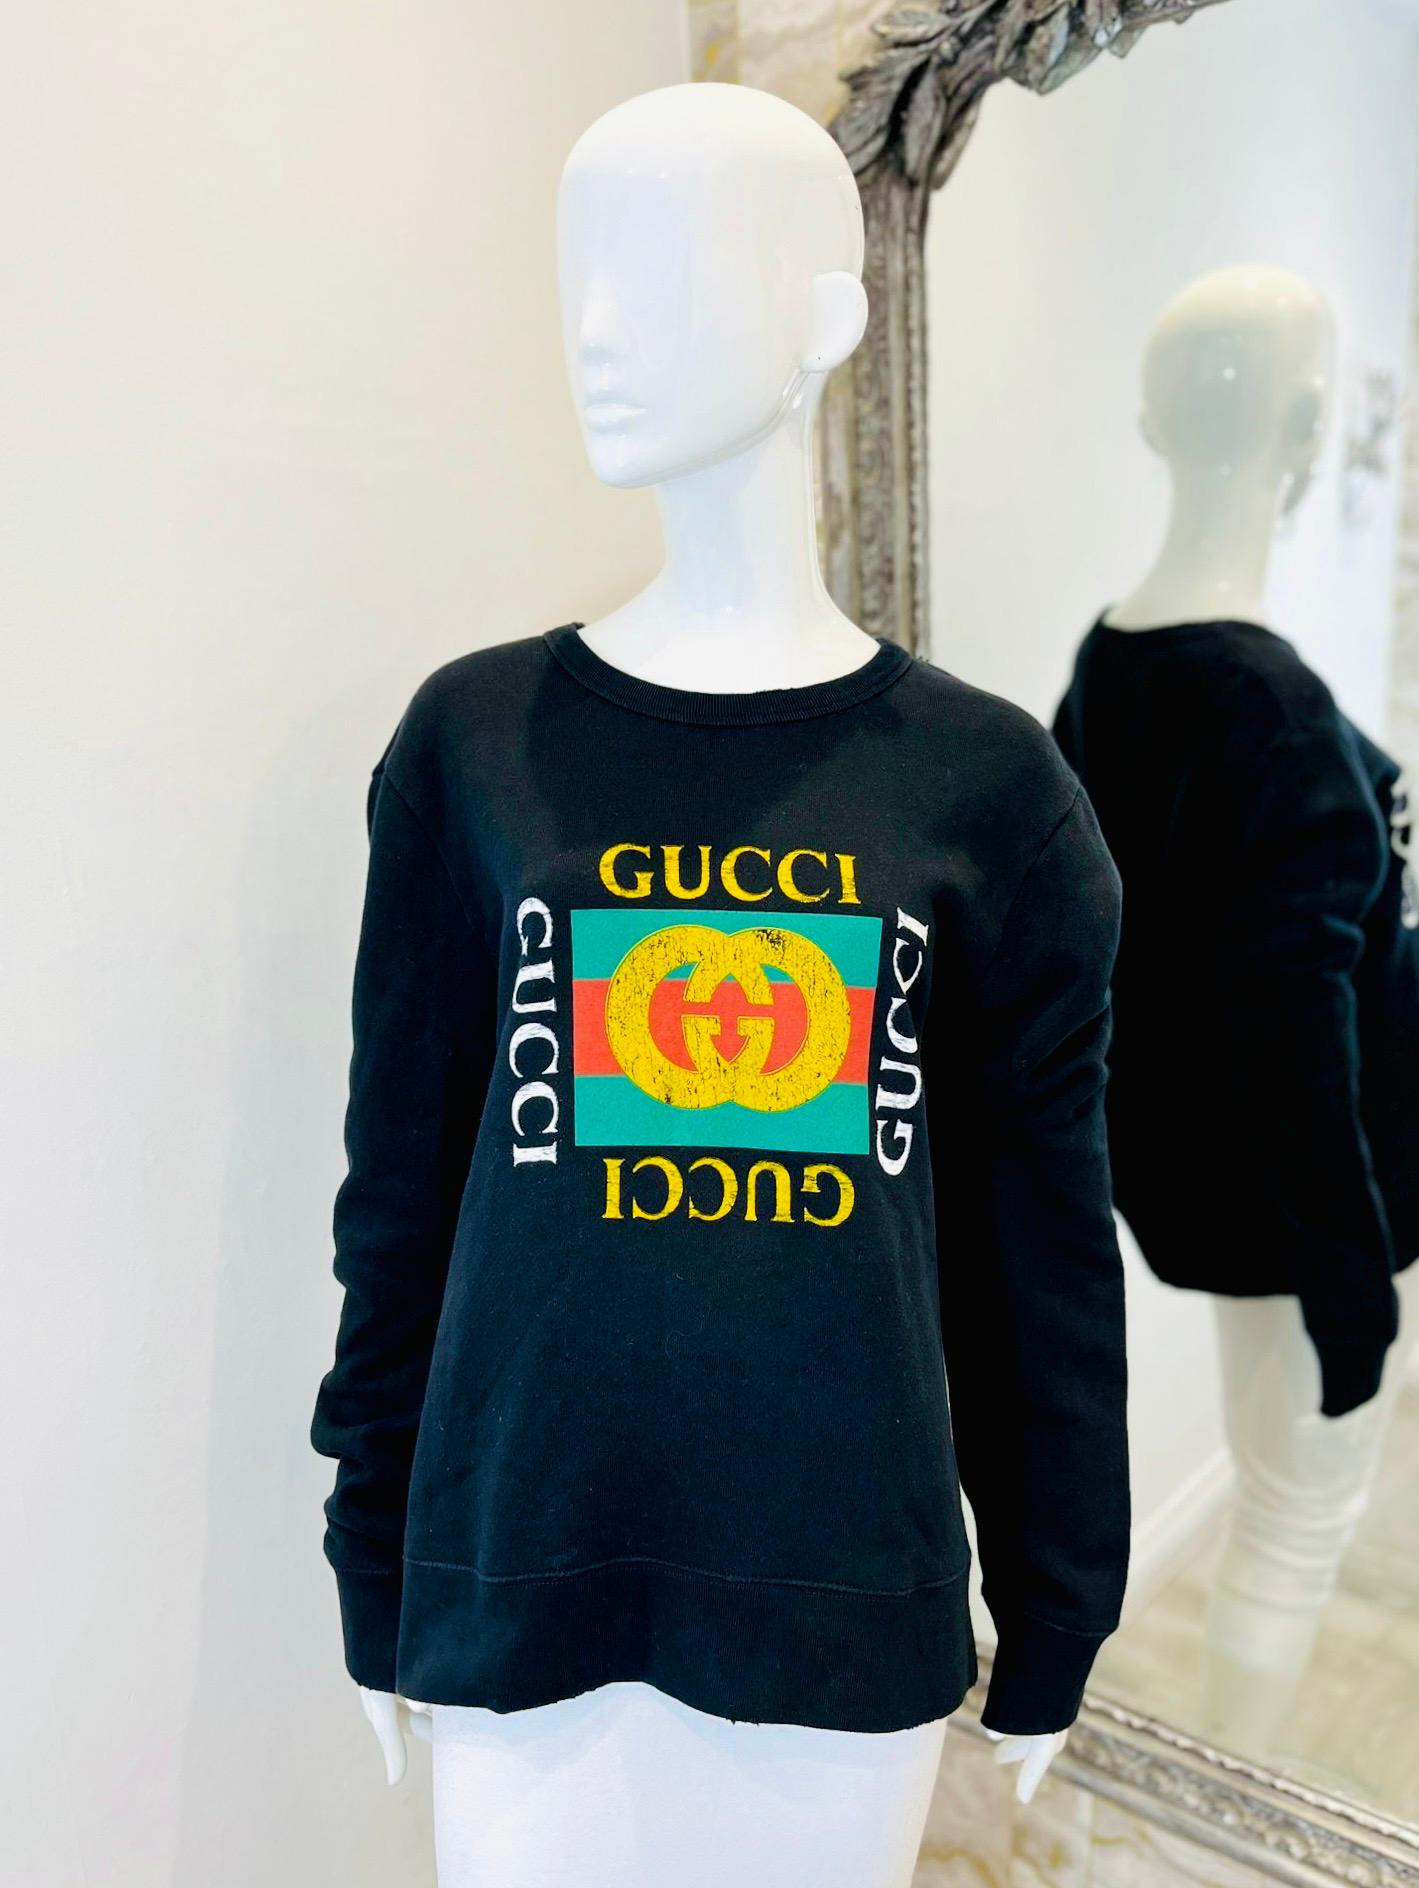 Sweat en coton avec logo Gucci

Top noir à manches longues orné du logo Gucci des années 80.

Il est doté d'une encolure ras-du-cou, de poignets et d'un ourlet côtelés et de bordures en relief. Rrp £770

Taille - L.

État - Très bon

Composition -